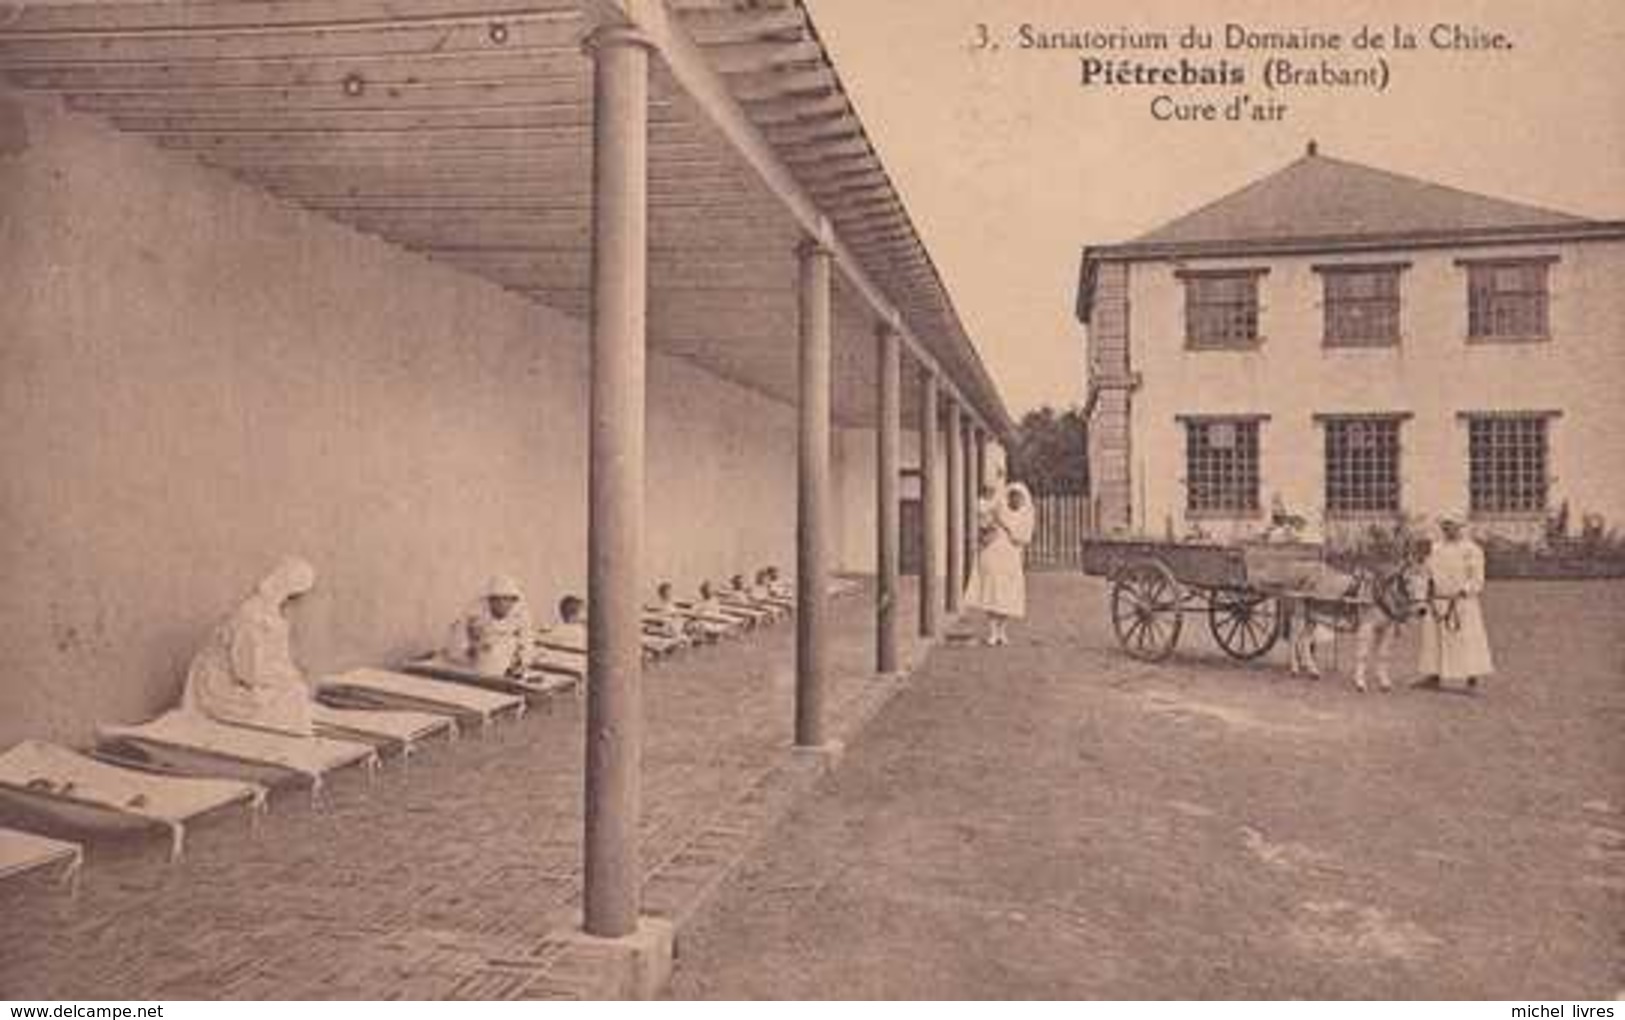 Piétrebais - Sanatorium Du Domaine De La Chise - Cure D'air - Animée - Circulé En 1932 - Incourt - TBE - Incourt